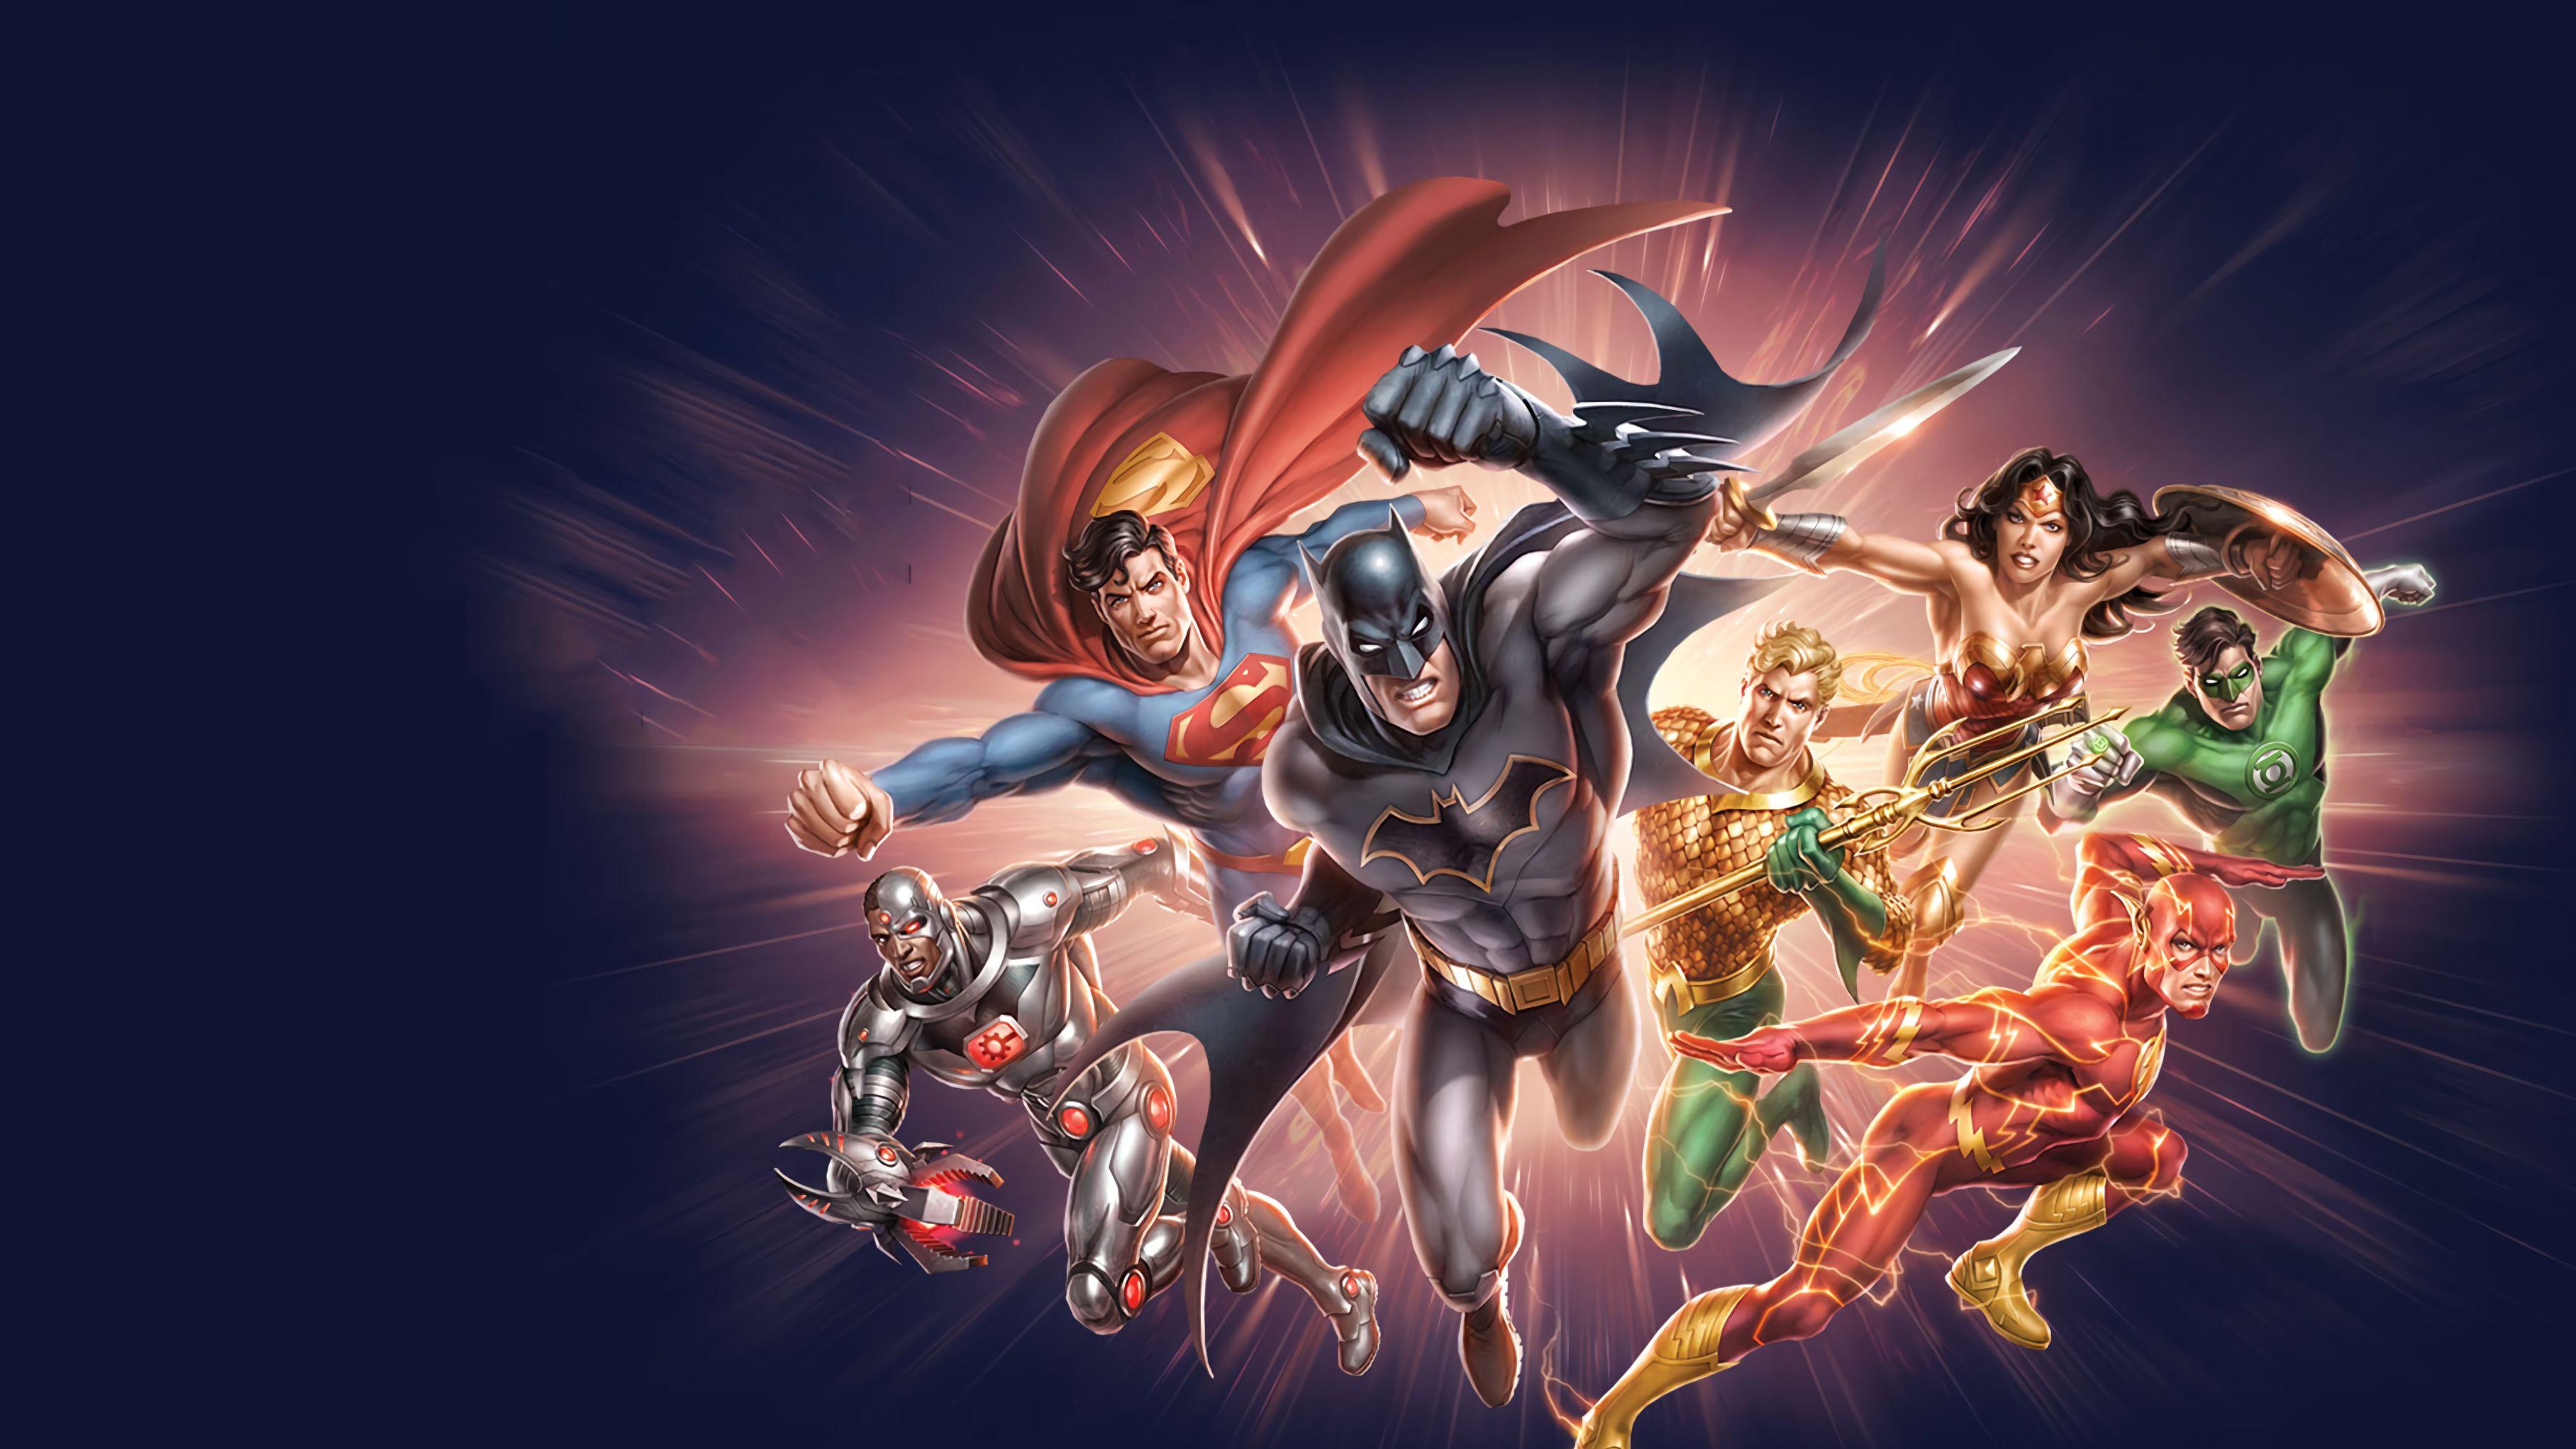 Comics Justice League DC Comics Batman Wonder Woman Aquaman Flash Green Lantern Cyborg Superman HD Wallpaper